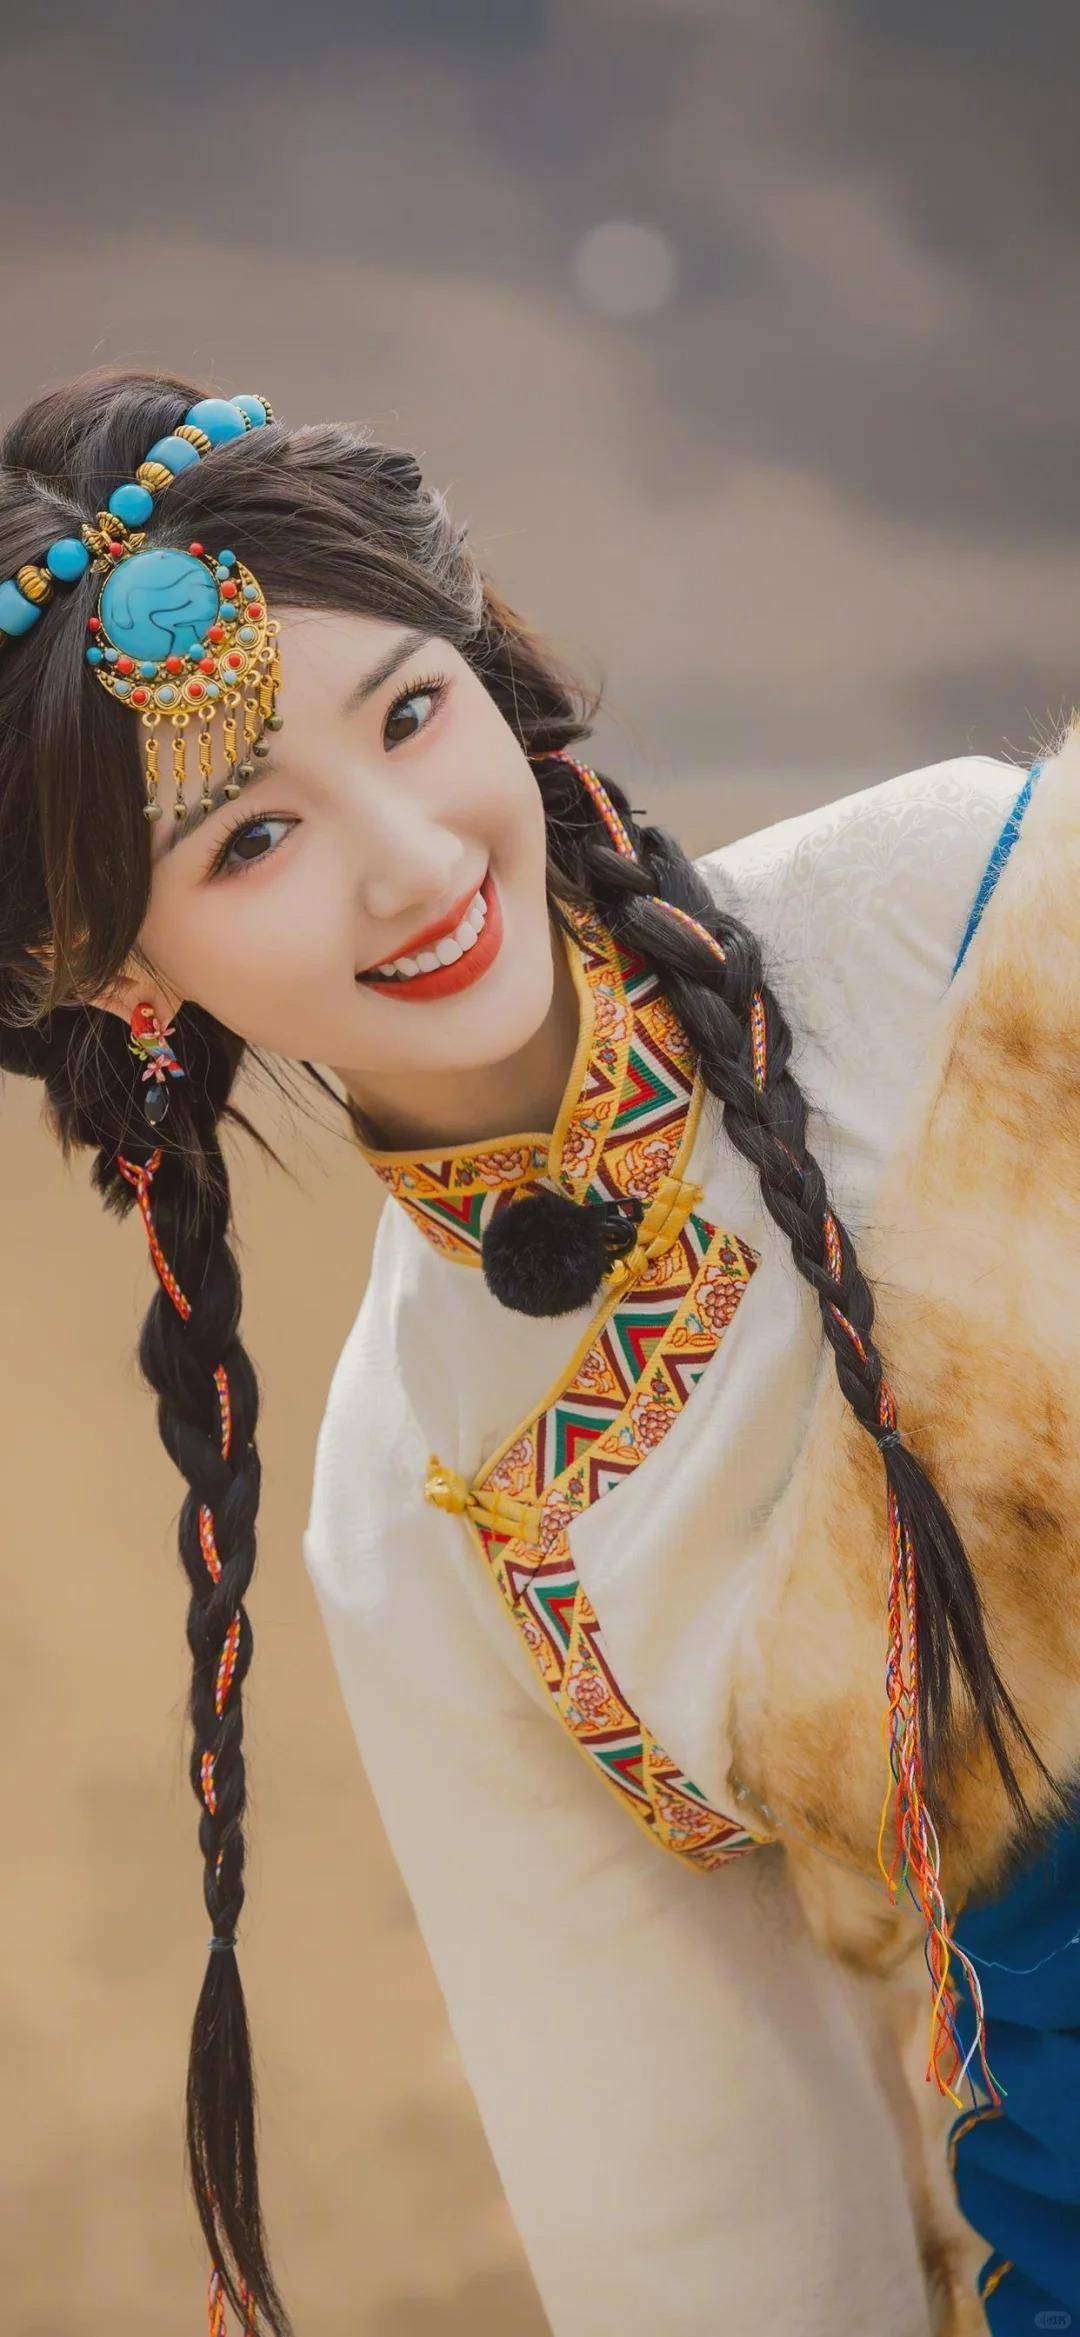 毛晓彤藏族风格写真:最美不过民族服装